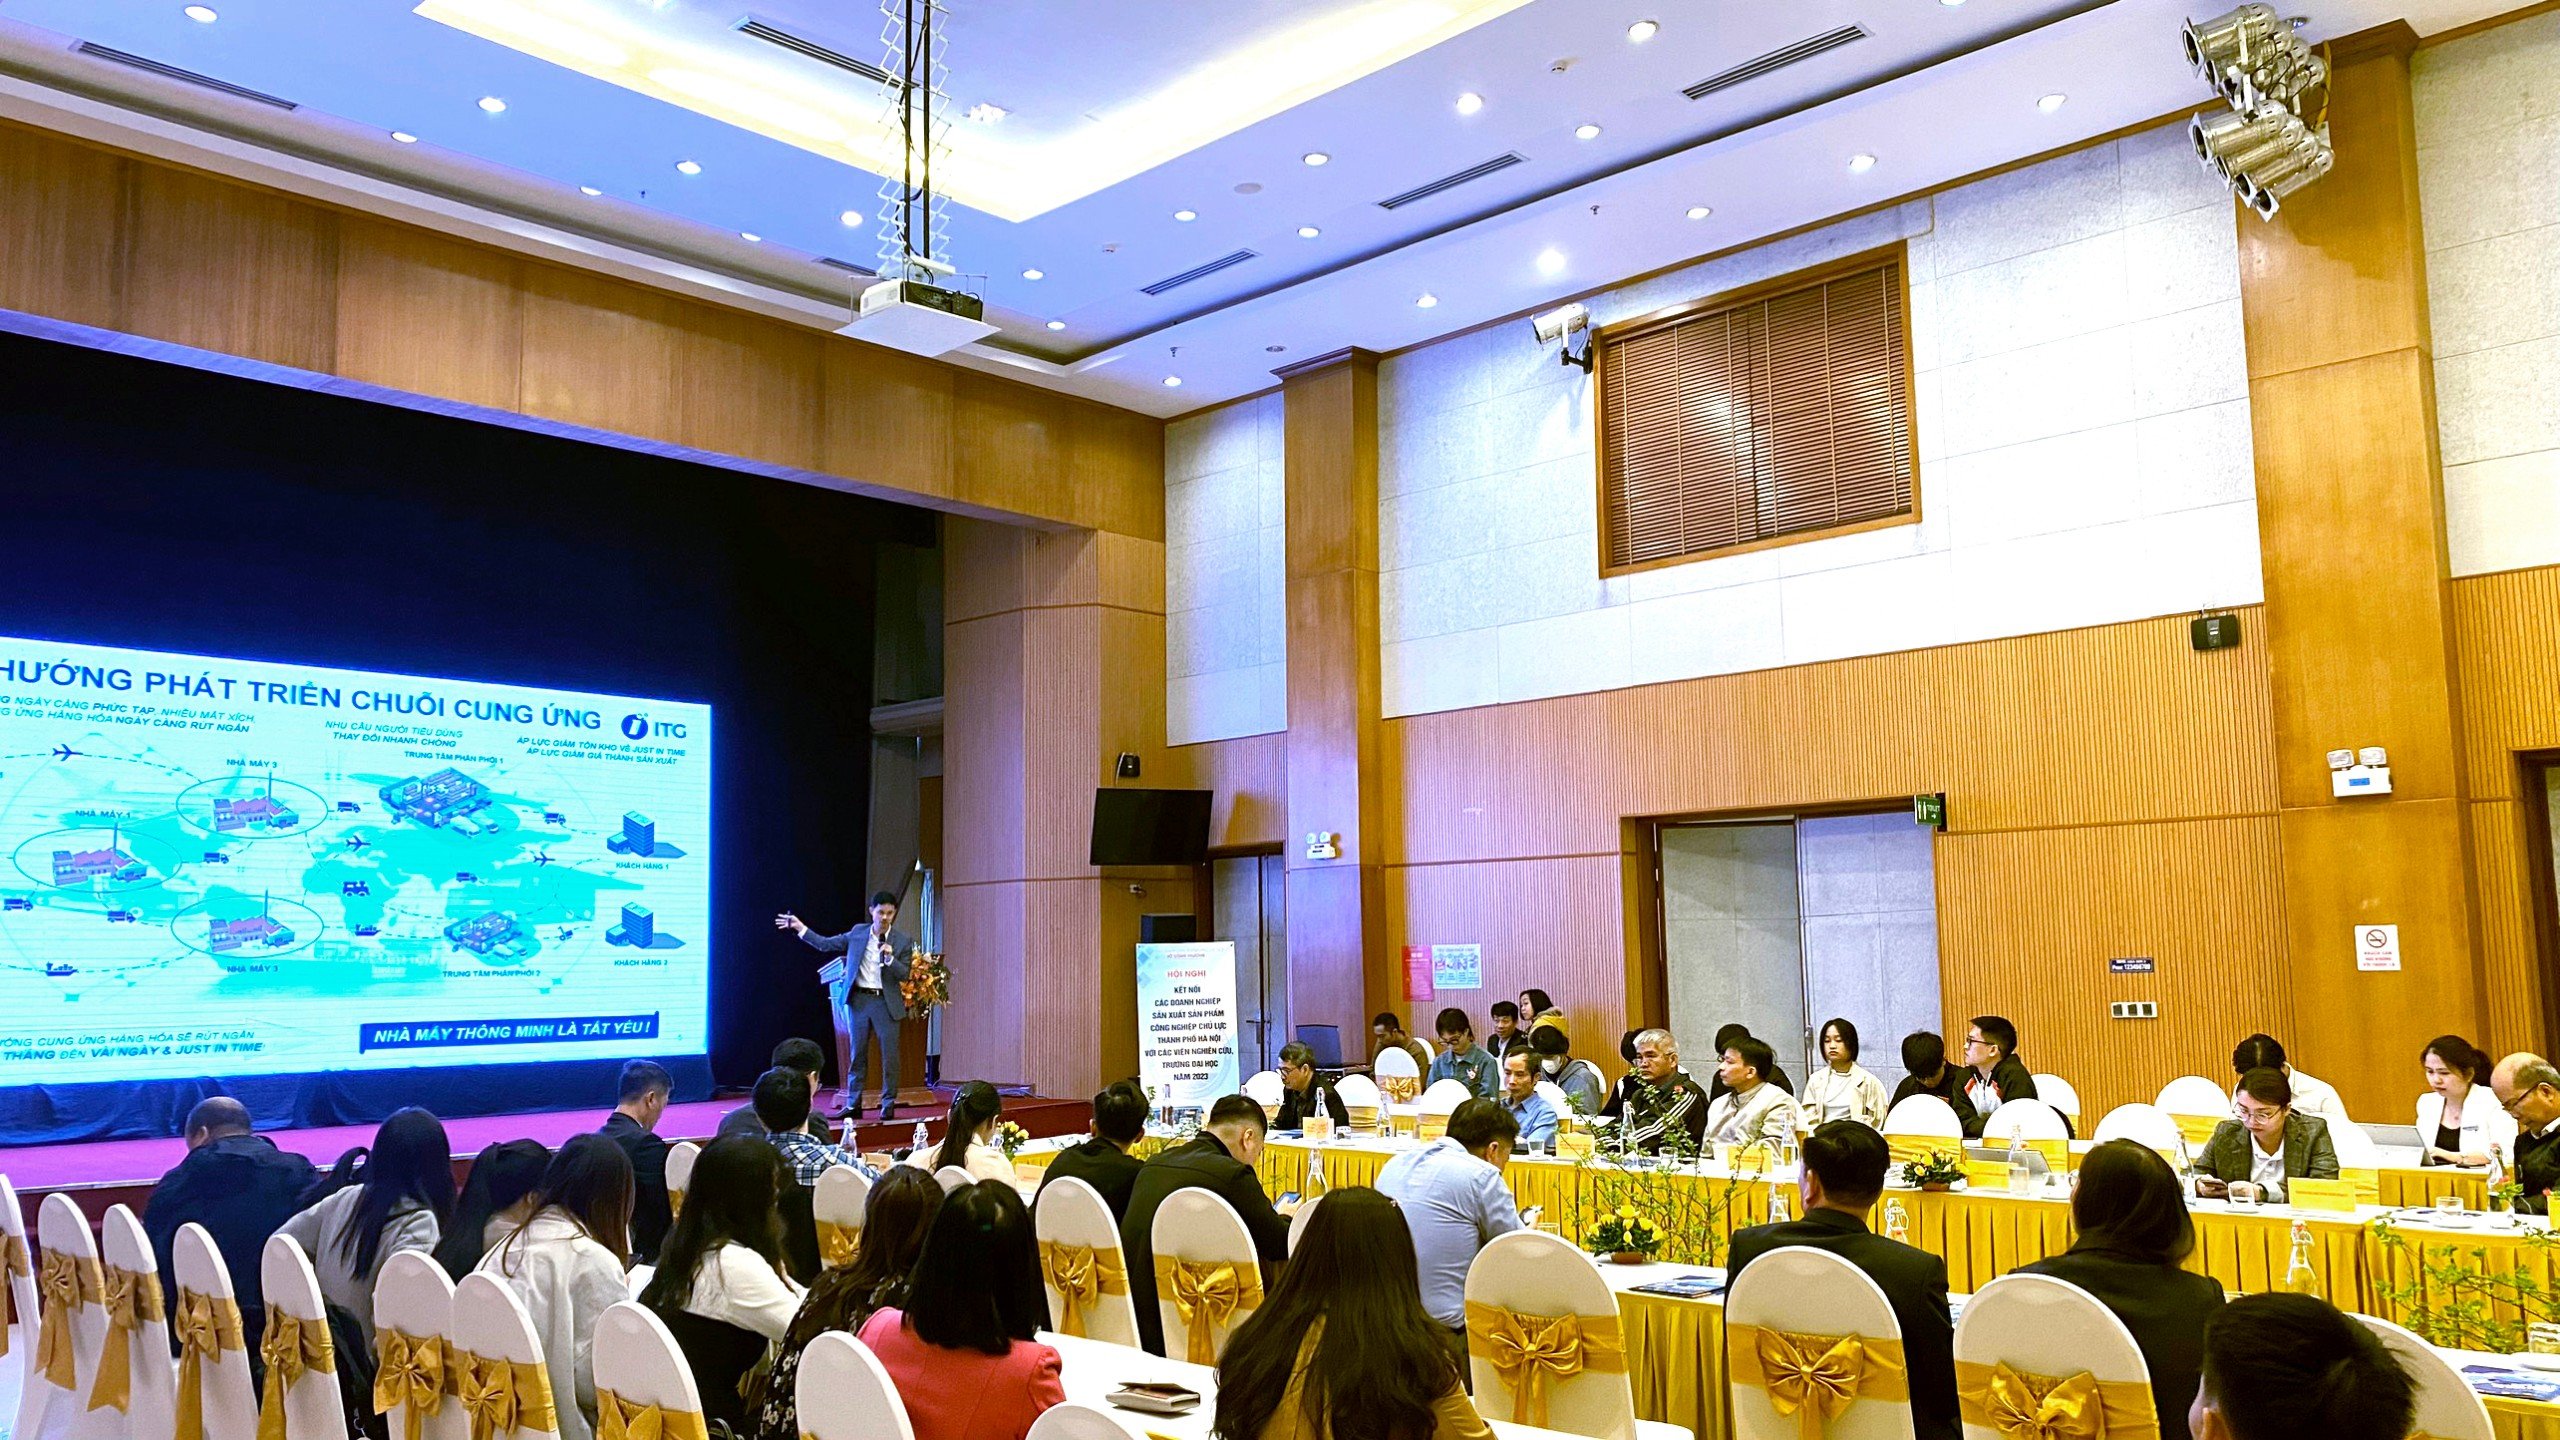 Ông Nguyễn Xuân Hách chia sẻ về xu hướng phát triển chuỗi cung ứng tại hội nghị